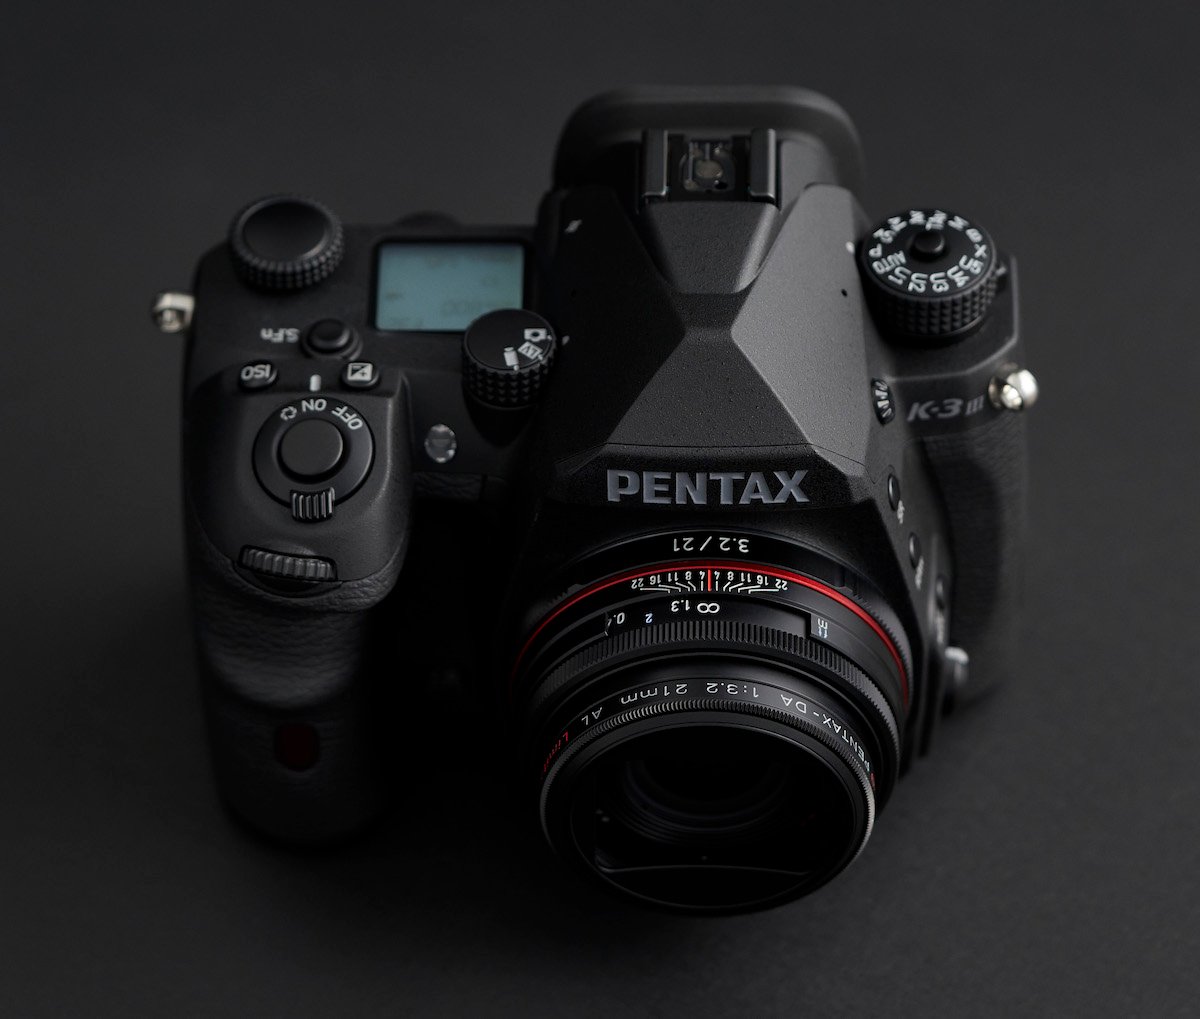 Pentax K-3 Mark III Monochrome